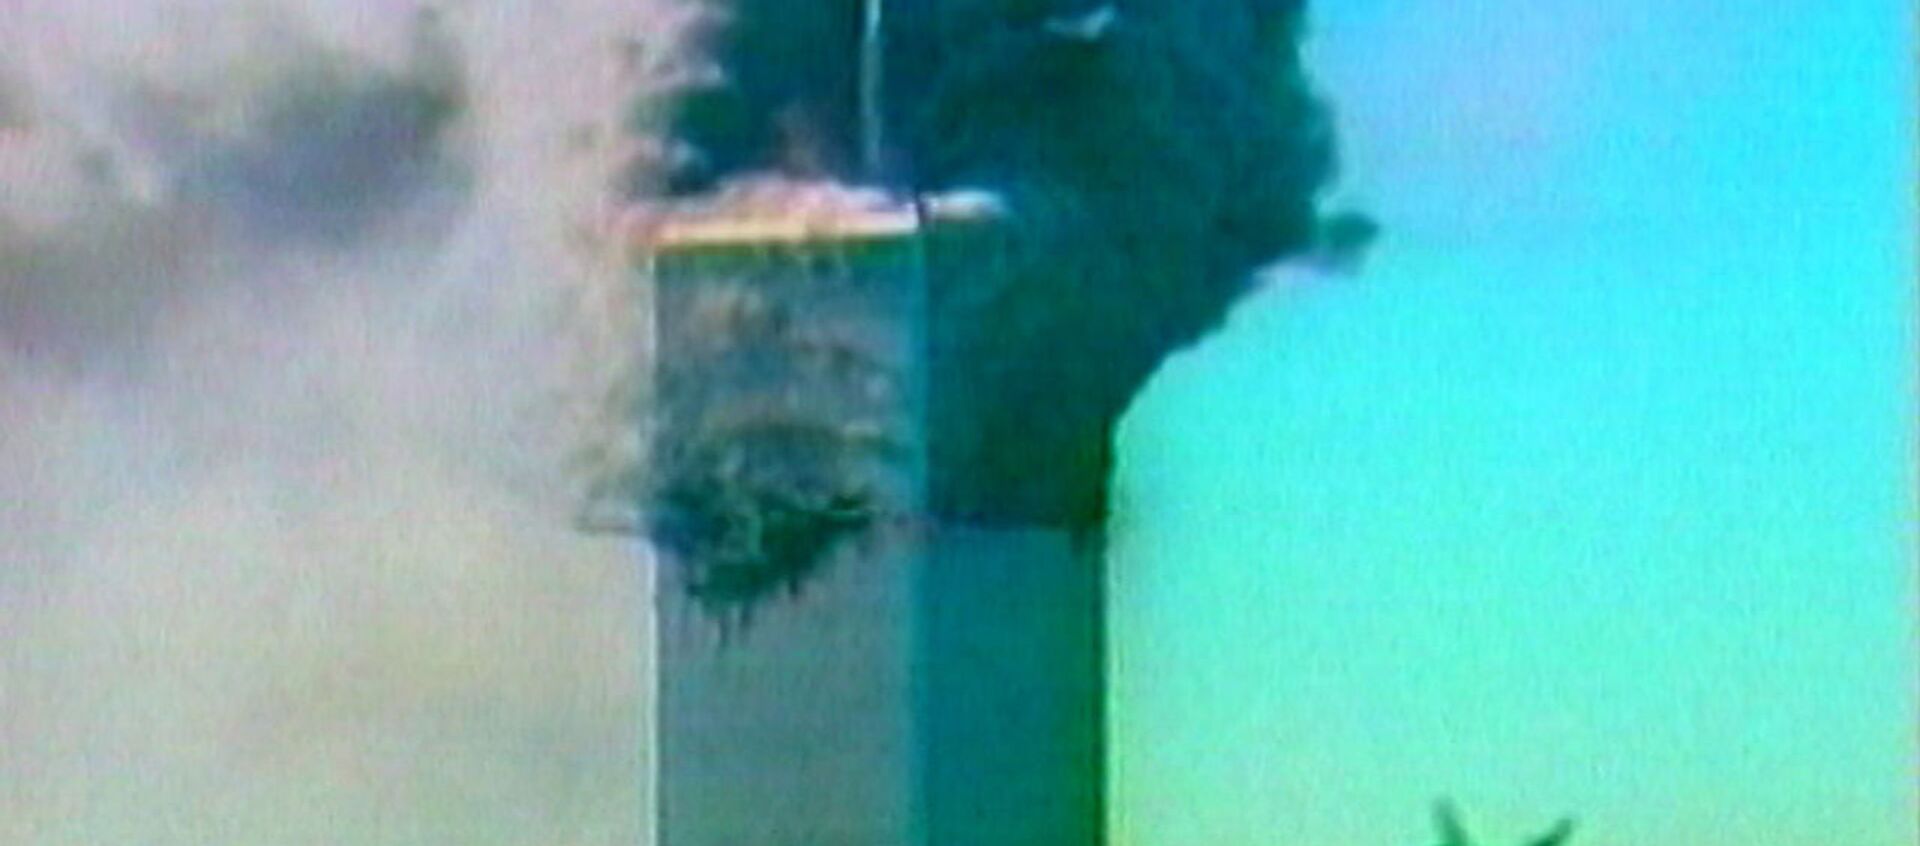 Террористический акт в Нью-Йорке 11 сентября 2001 года. Кадры из архива - Sputnik Узбекистан, 1920, 11.09.2019